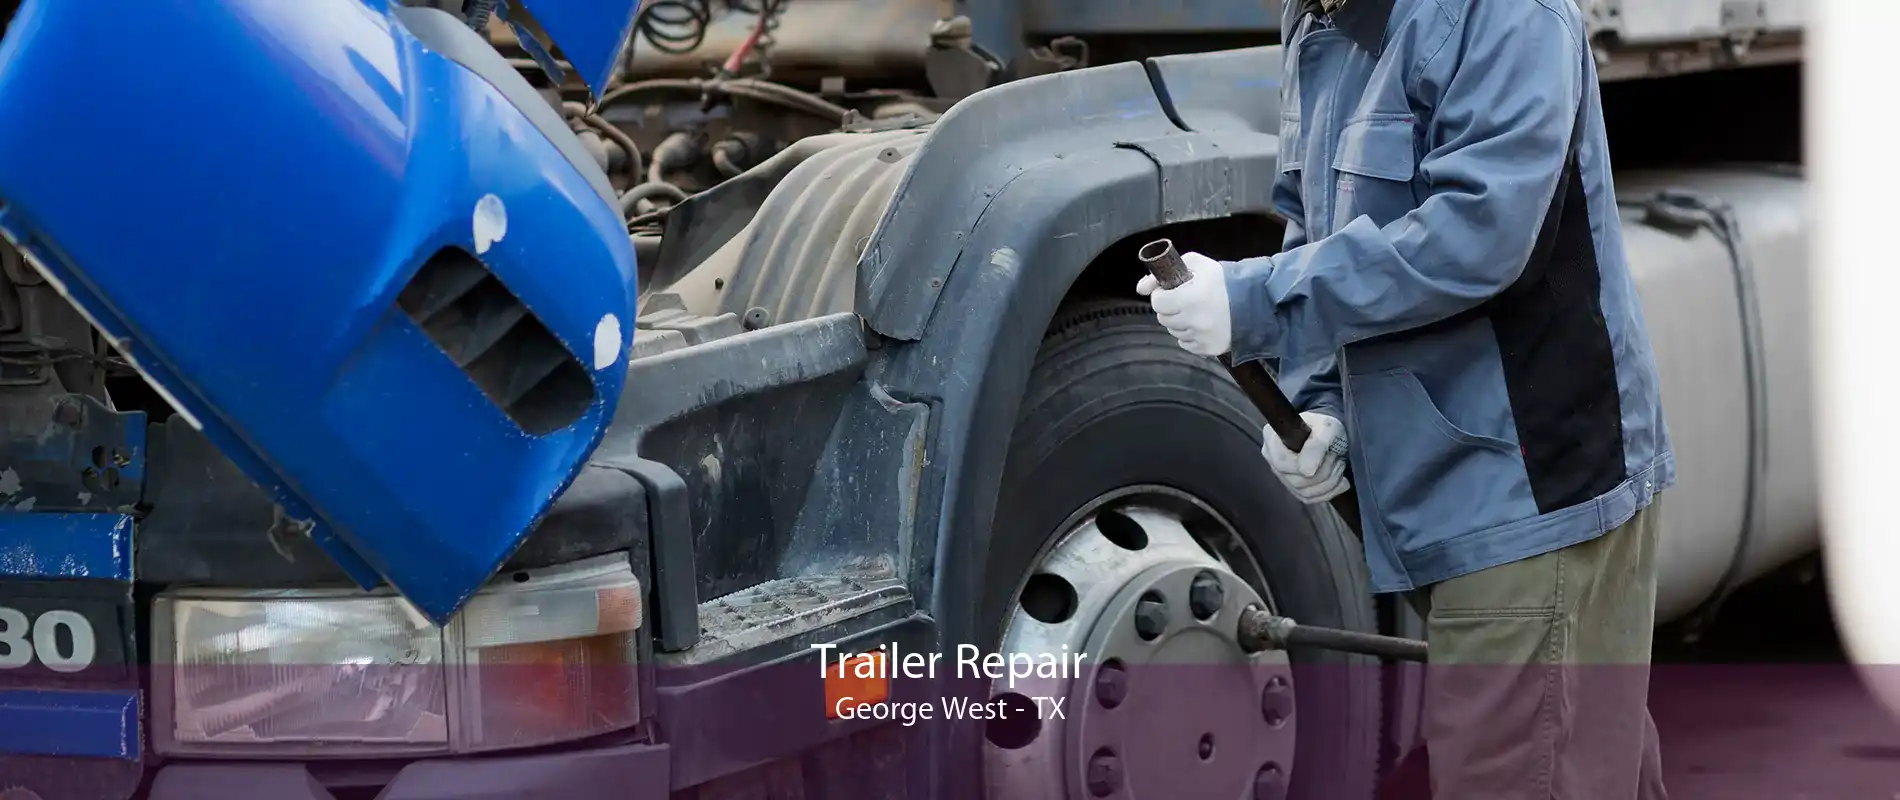 Trailer Repair George West - TX